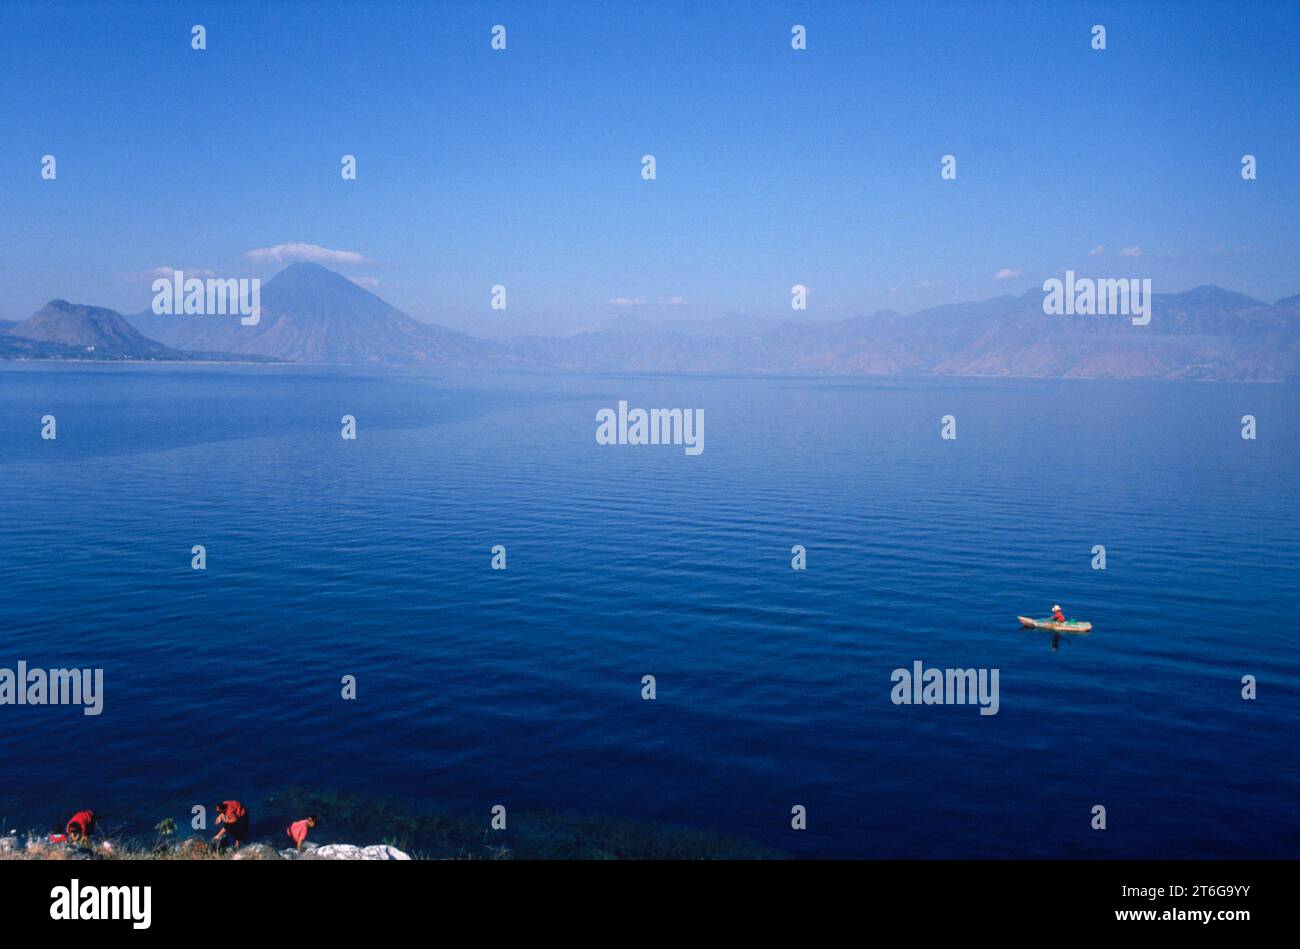 Lake Atilan; largest fresh water lake in Central America. Stock Photo